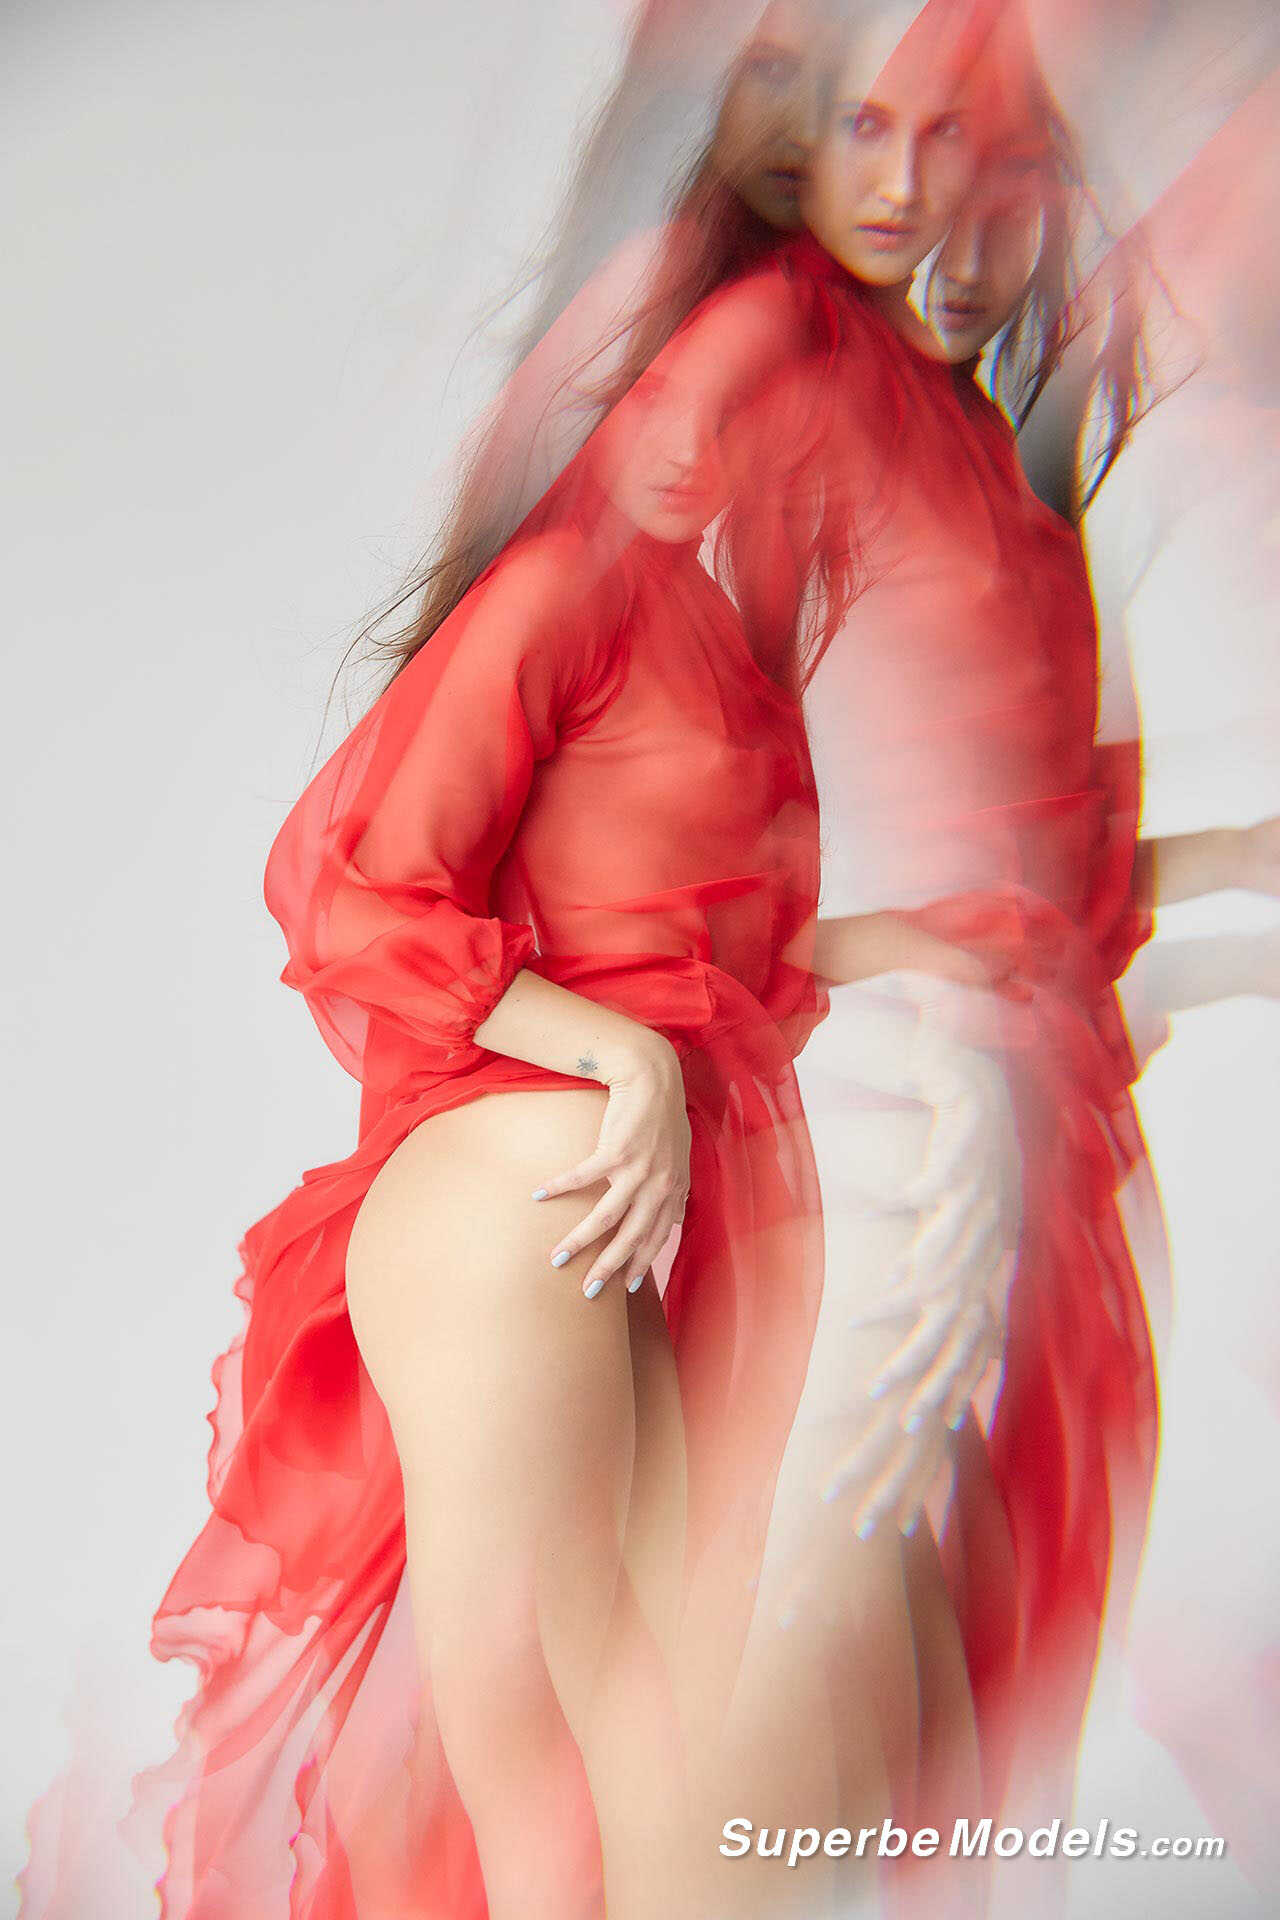 Το μοντέλο Brianna Wolf σε γυμνή φωτογράφηση